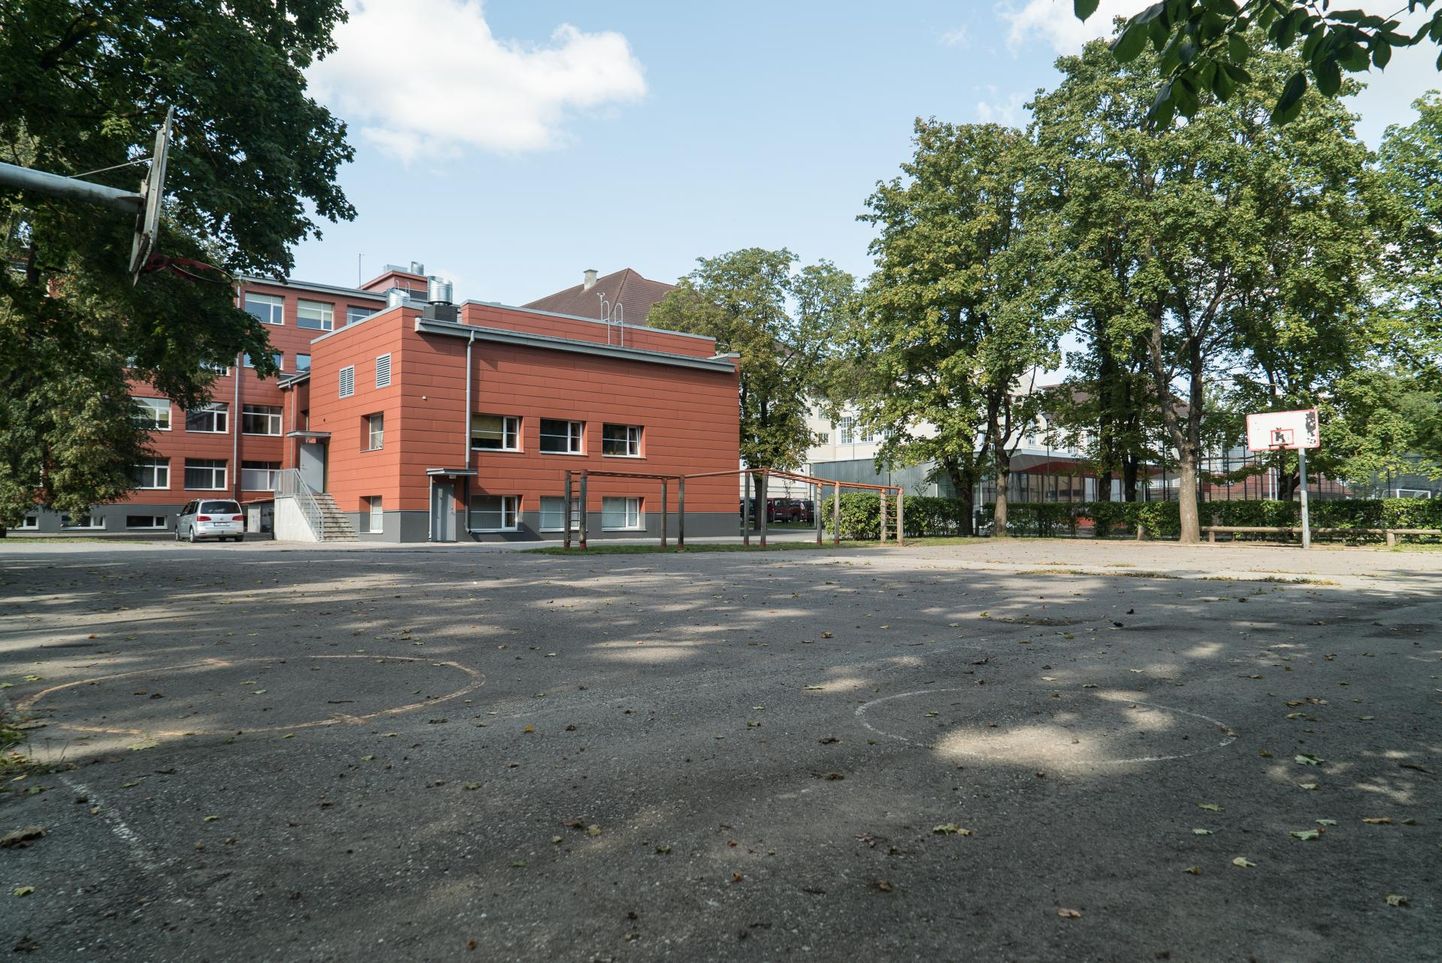 Mart Reiniku kooli kahe õppehoone vahele jääv liikuma kutsuv hoov pidanuks valmima sügisel, ent ehitaja leidmise riigihange nurjus. Loodetavasti läheb uuel aastal uue hankega paremini.